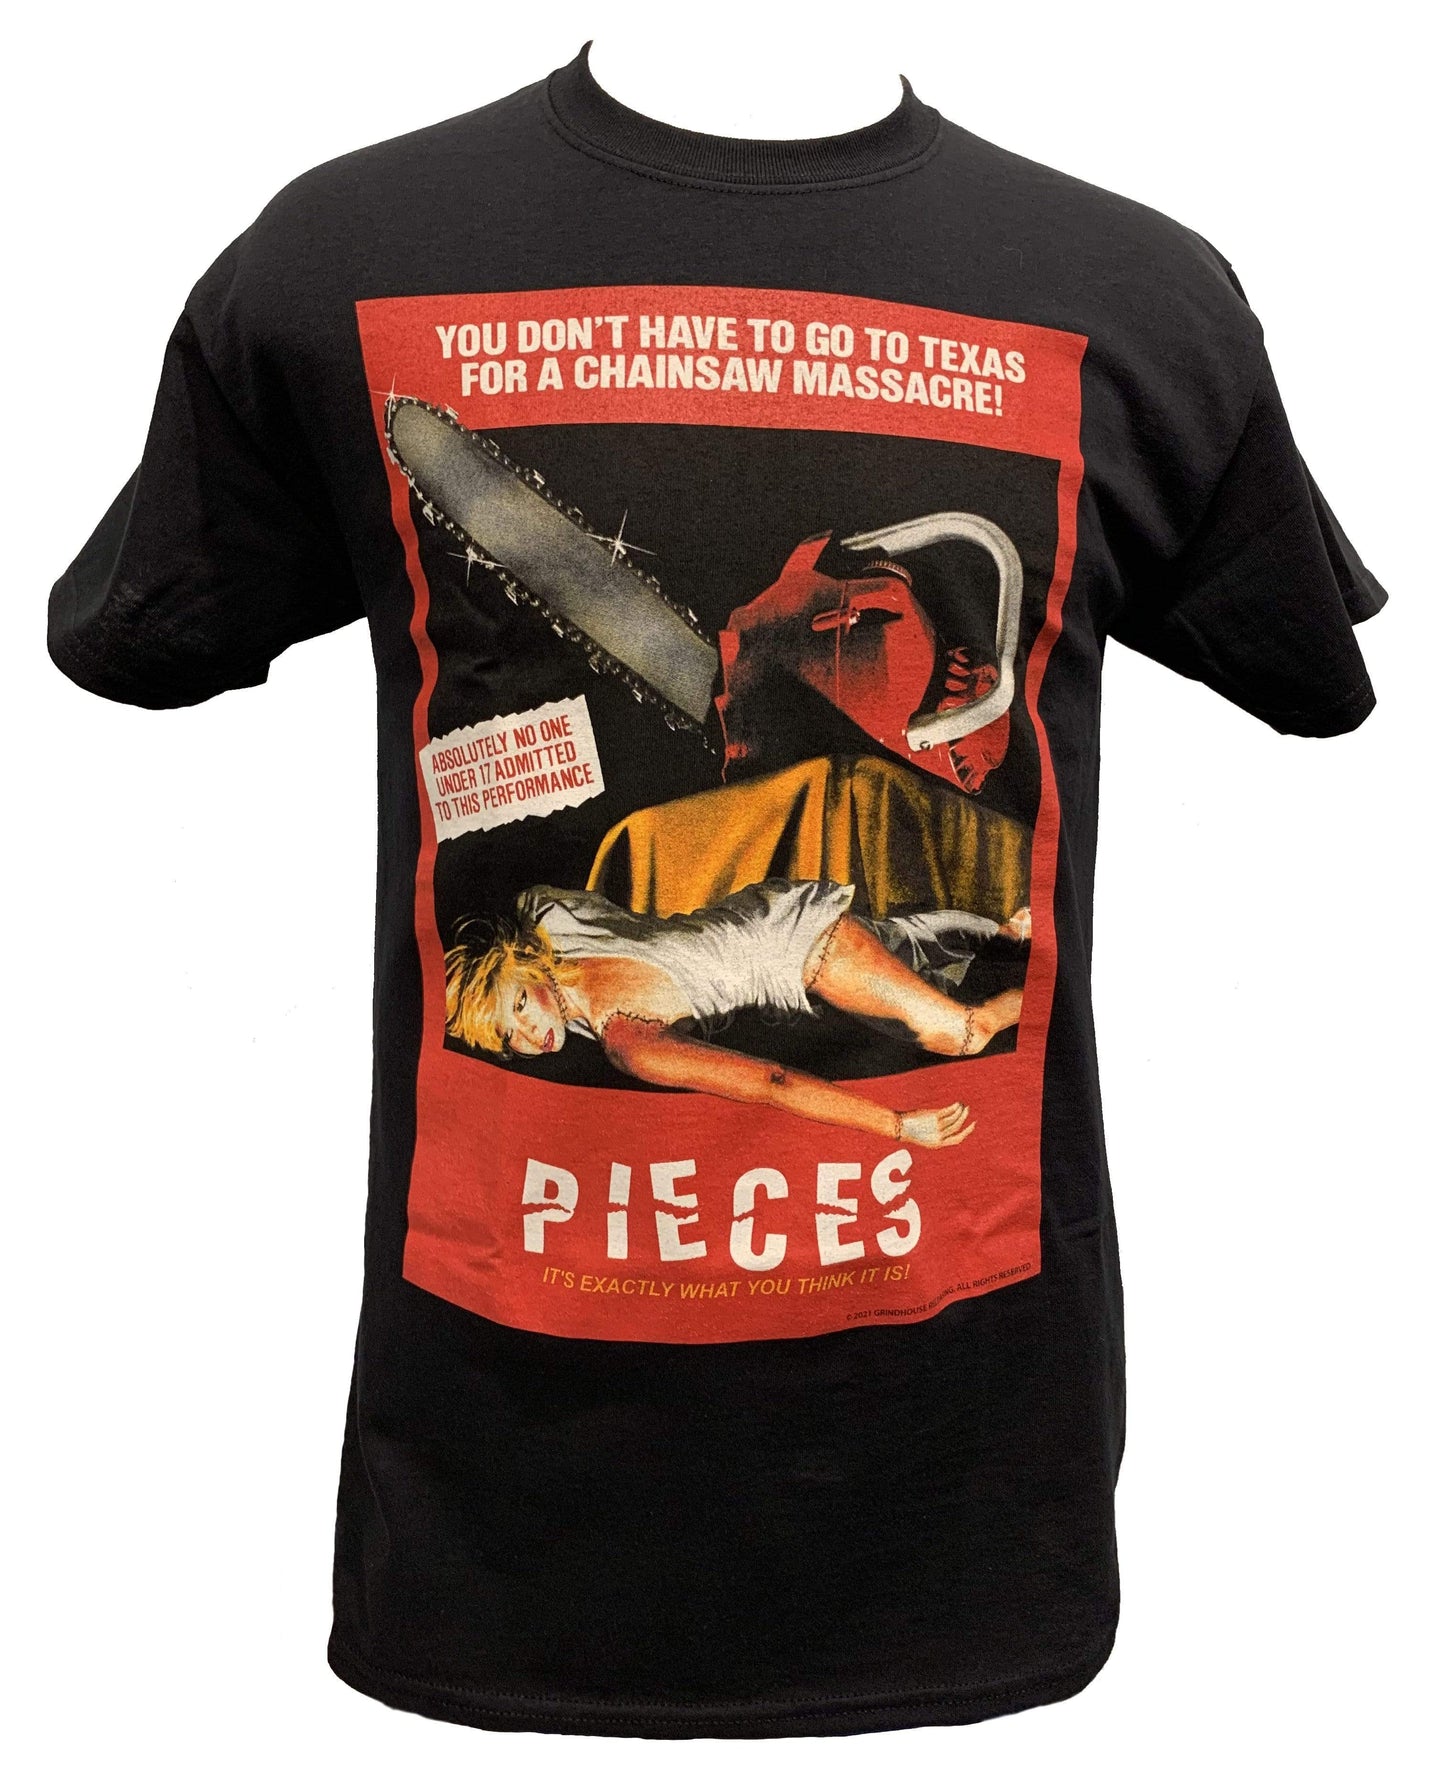 PIECES T-shirt : 1983 poster art